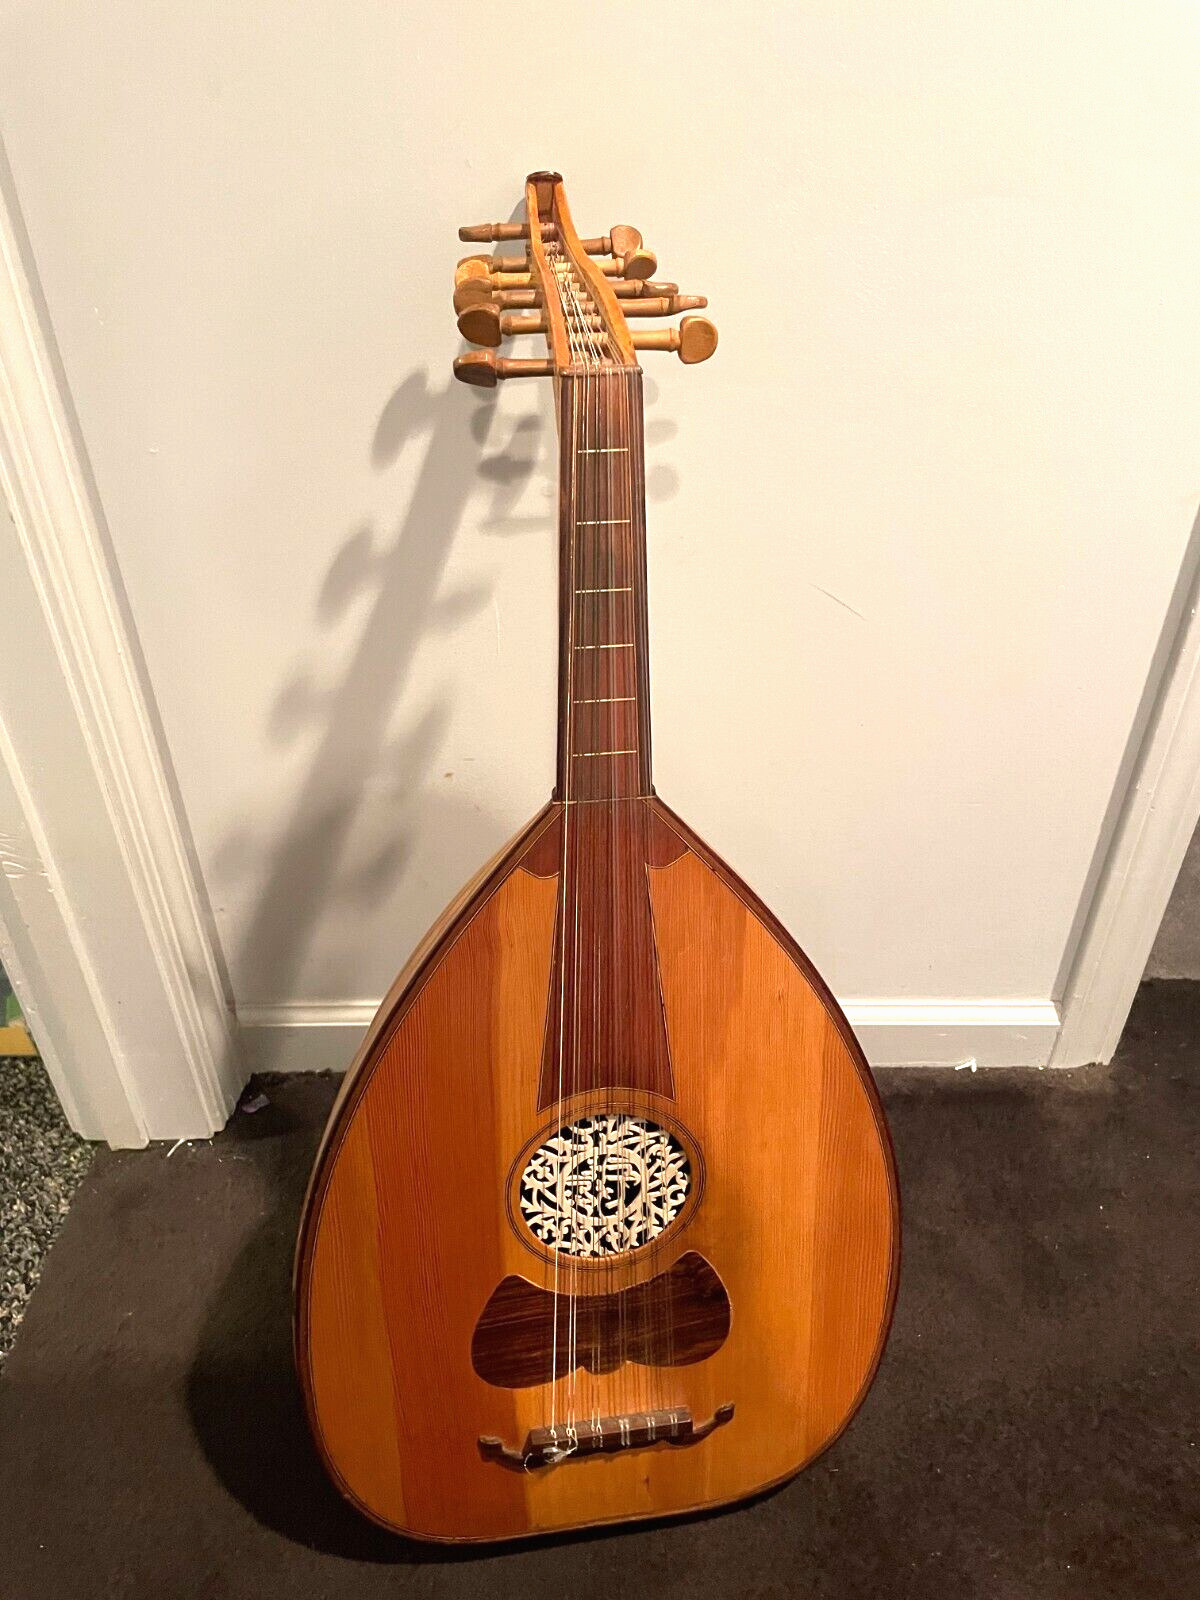 Vintage Lute Wooden String Instrument Bend Neck Guitar